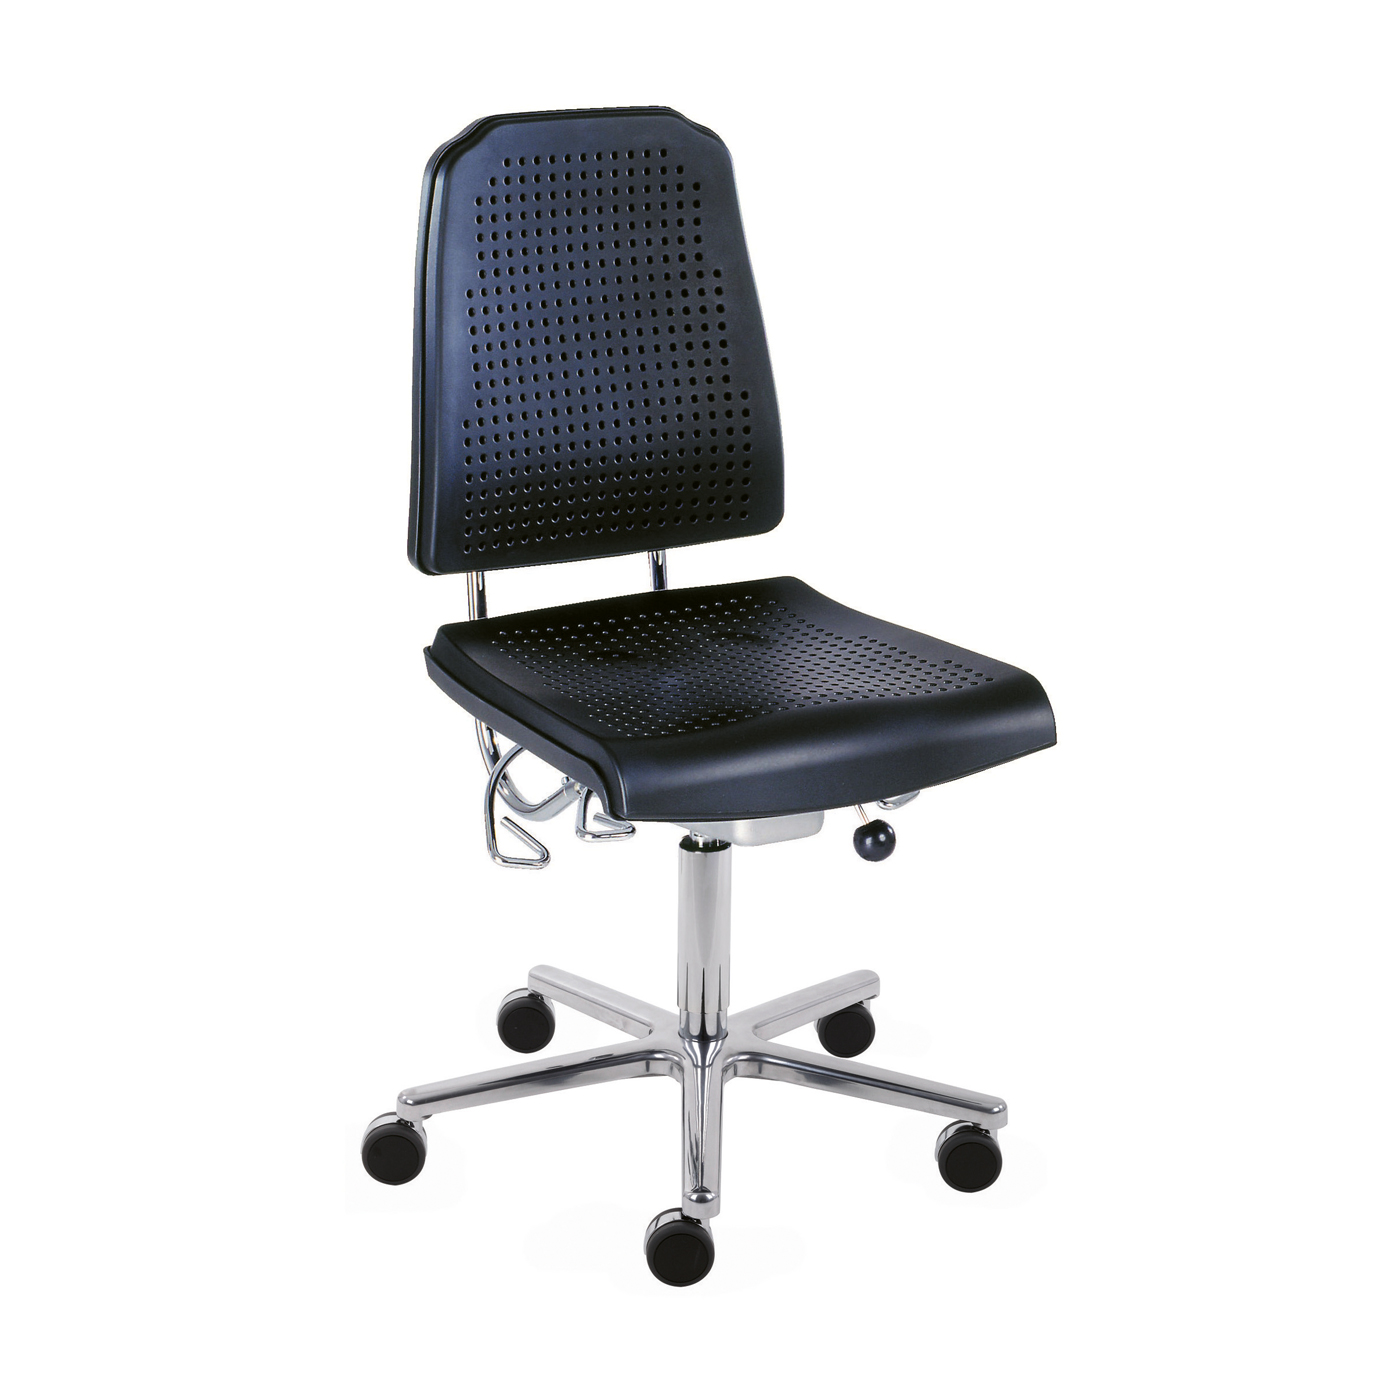 Klimastar Swivel Chair, Black - 1 piece